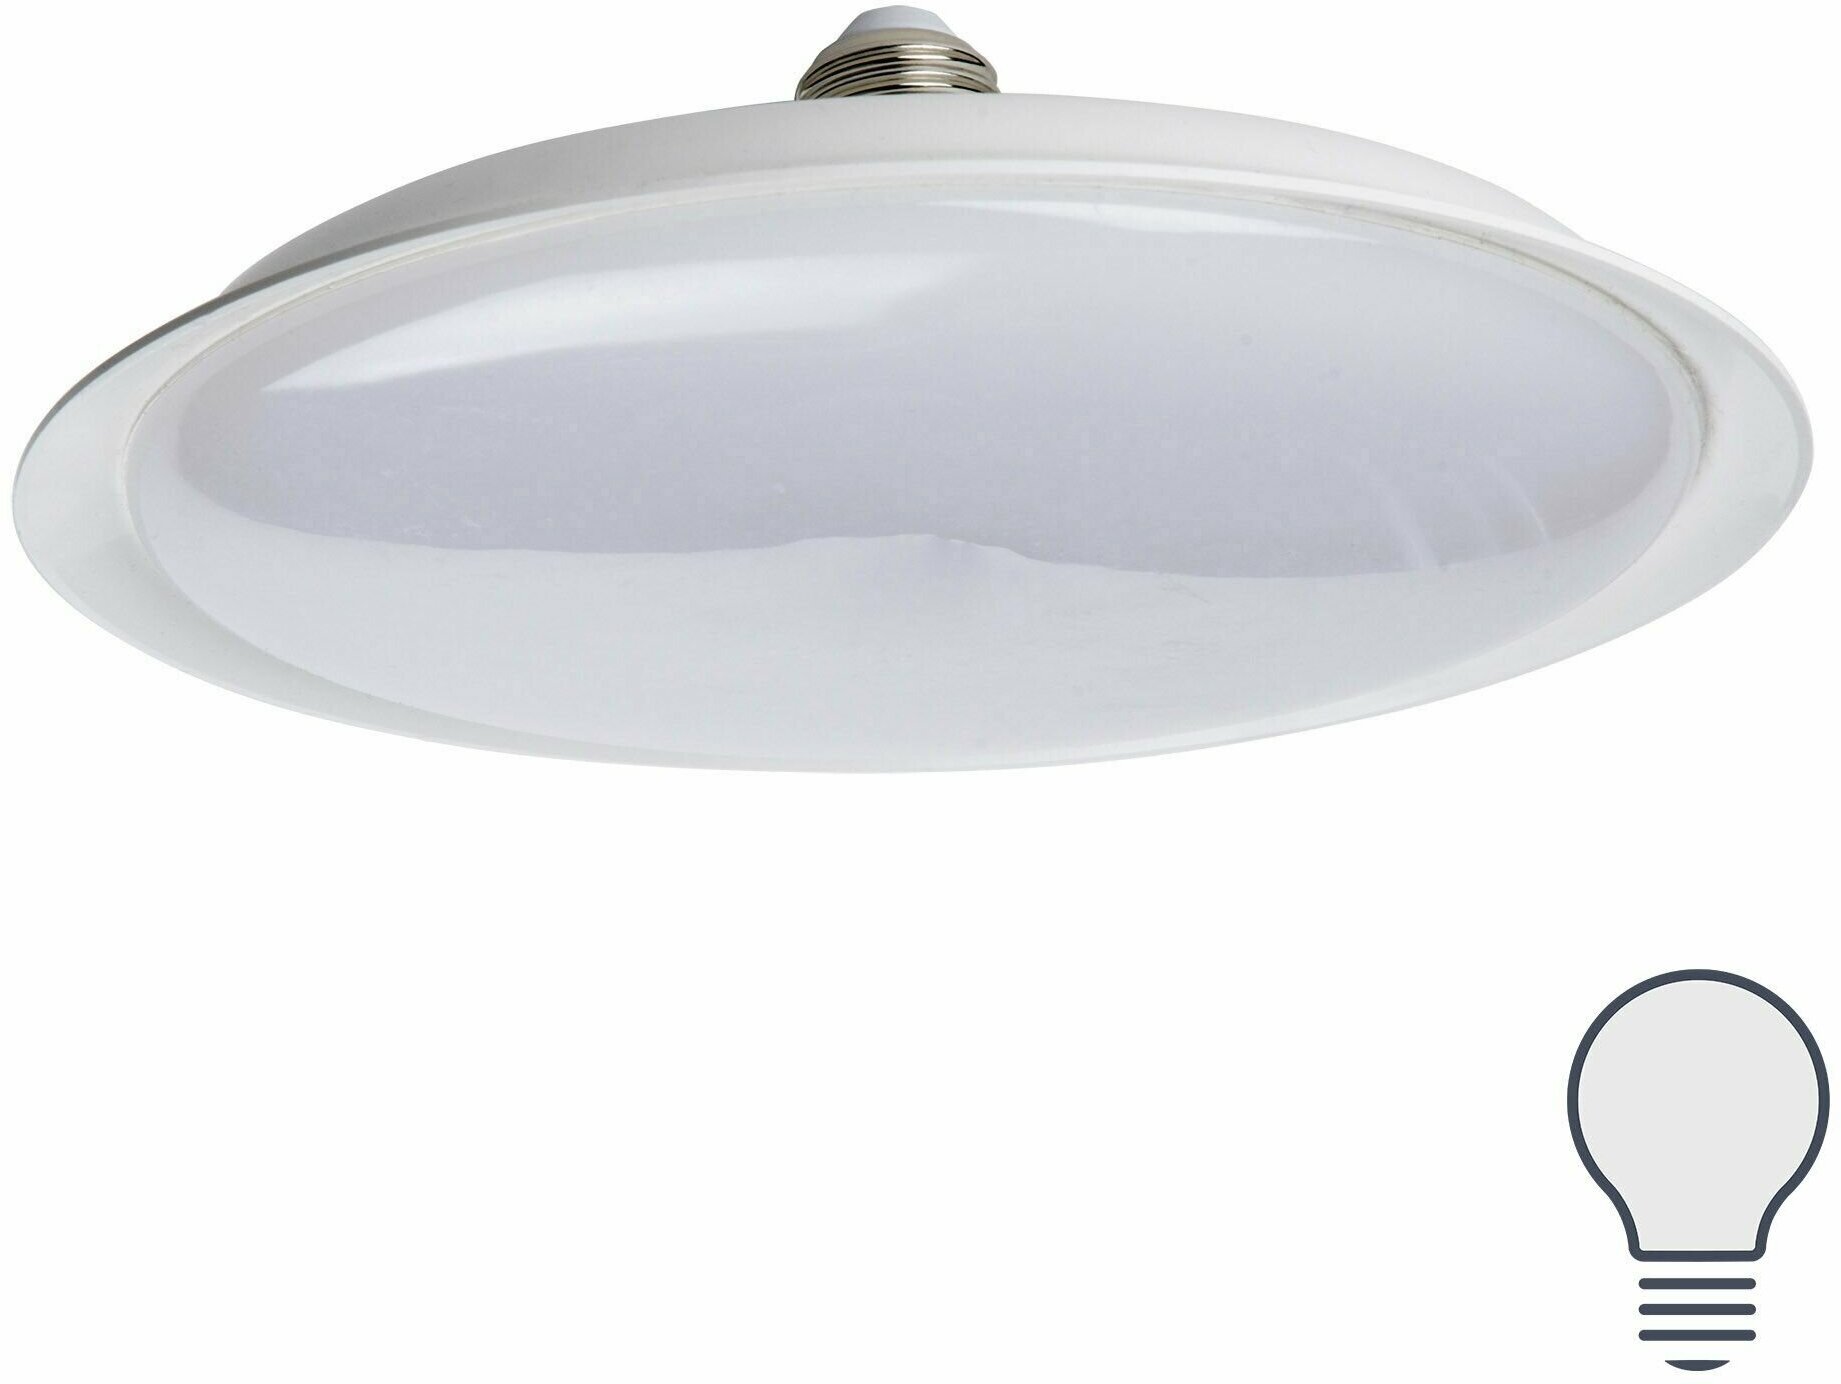 Лампа светодиодная Uniel UFO165 E27 220 В 20 Вт диск матовый 1600 лм холодный белый свет